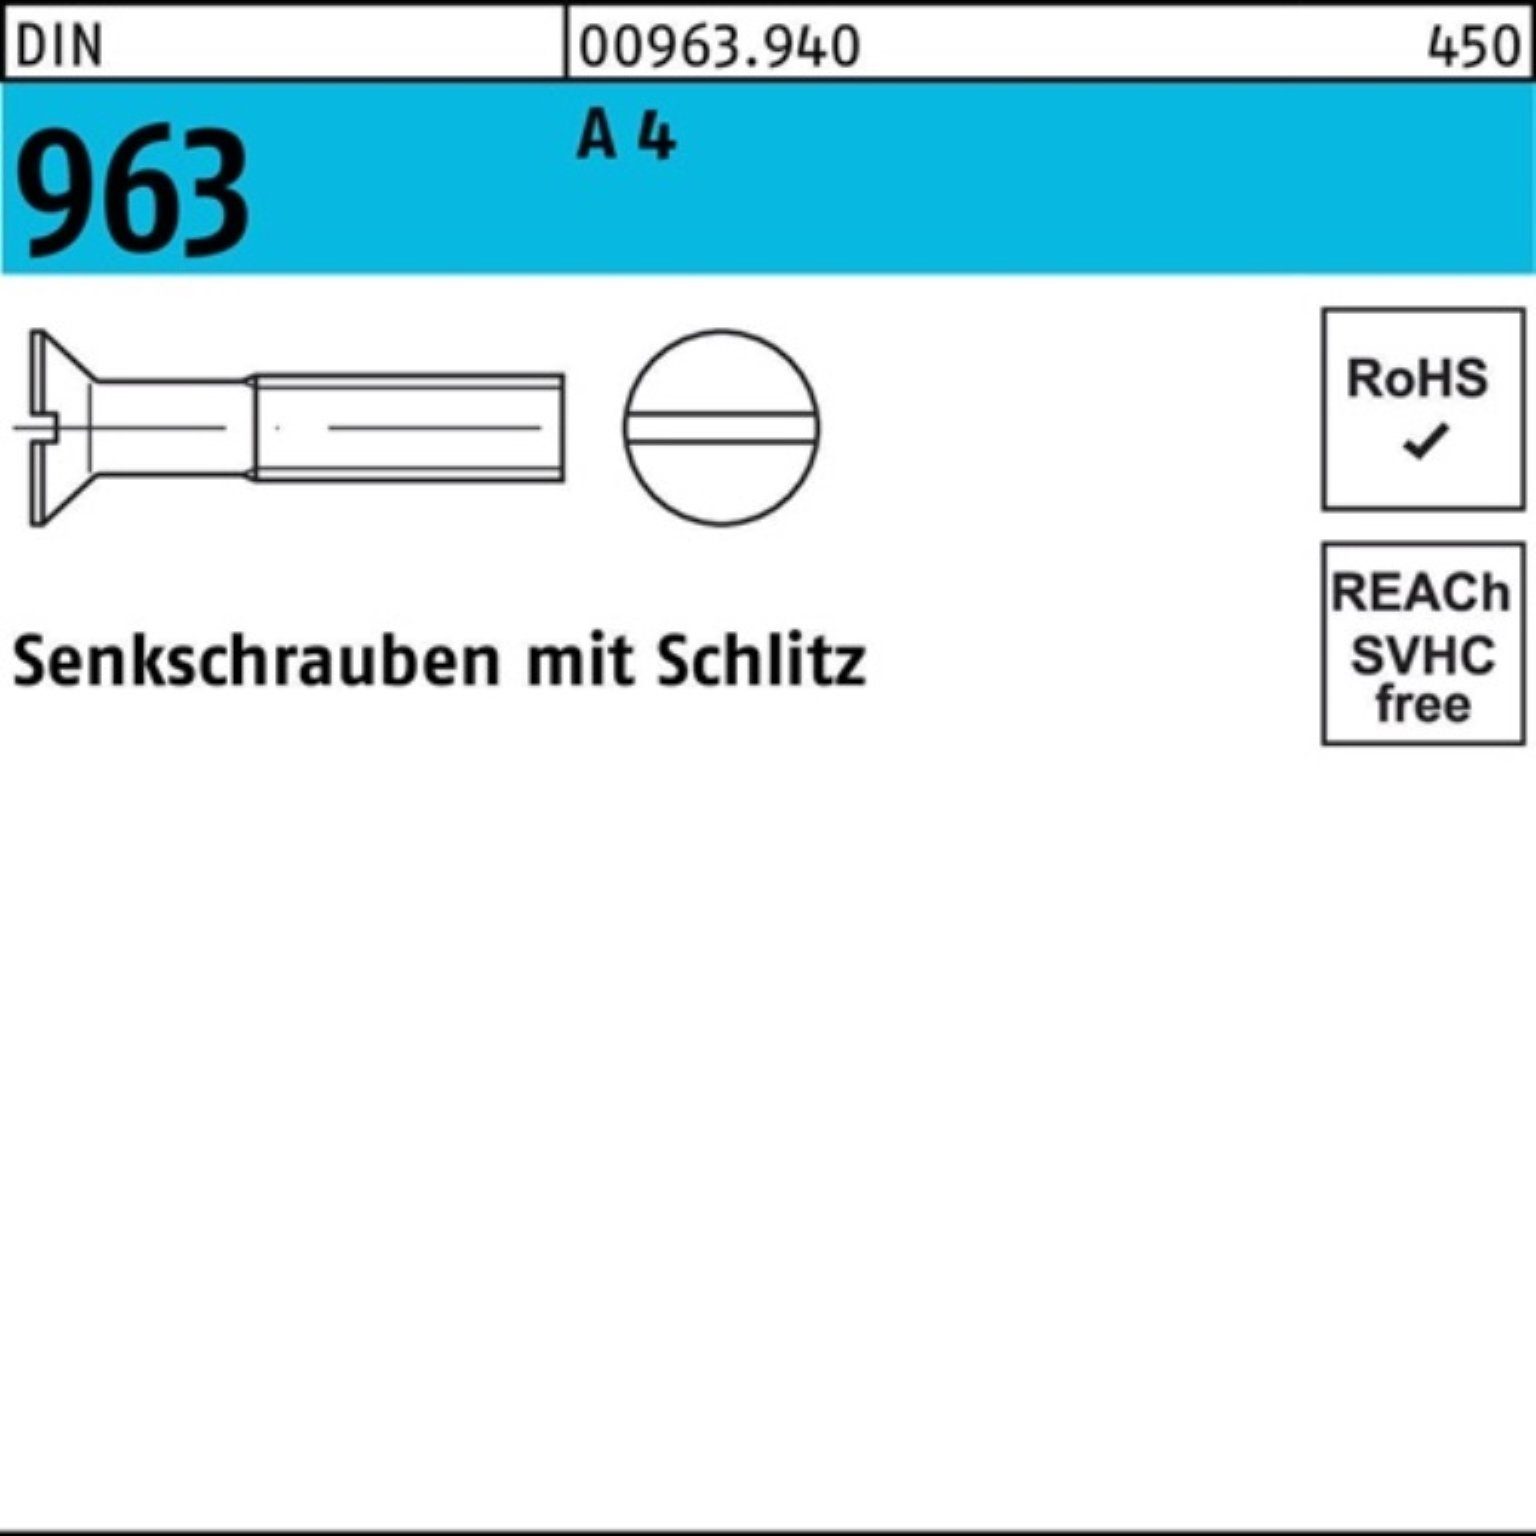 Reyher Senkschraube 100er 4 A Senkschraube 100 DIN DIN Stück Pack 963 M8x Schlitz 963 45